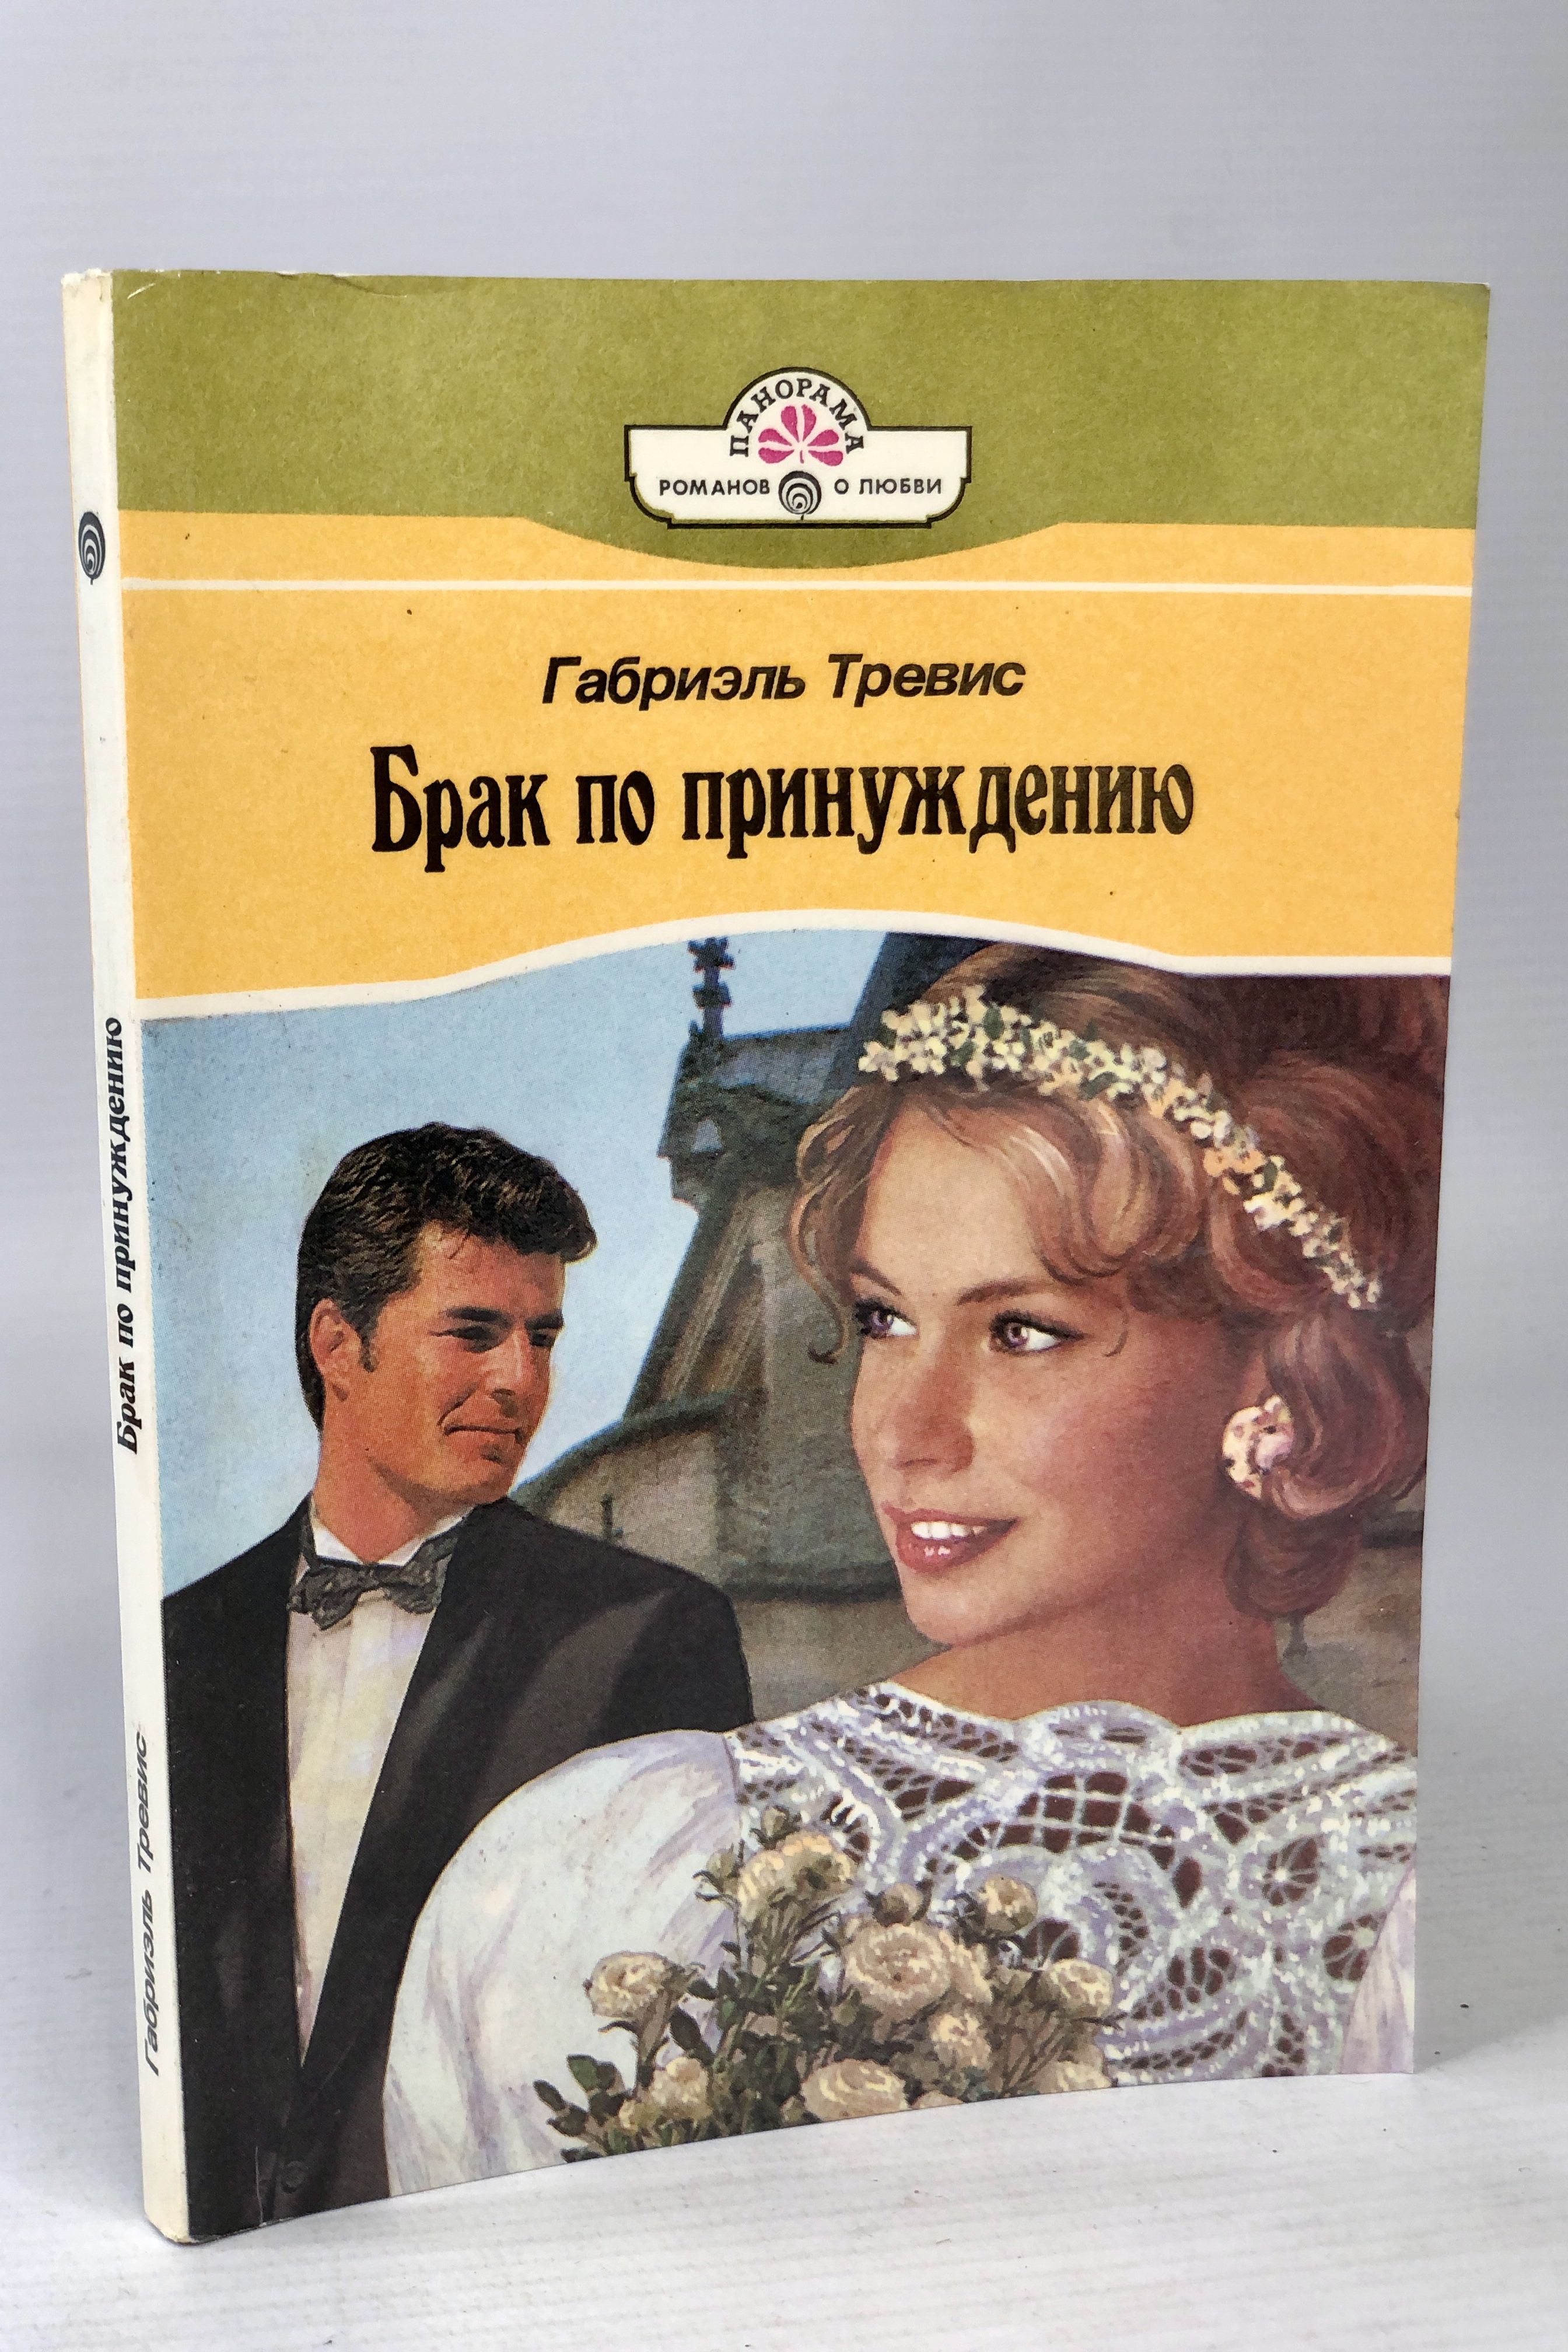 Читать книги про брак. Книга про брак. Книга про брак по принуждению популярная. Образцовое супружество книга.